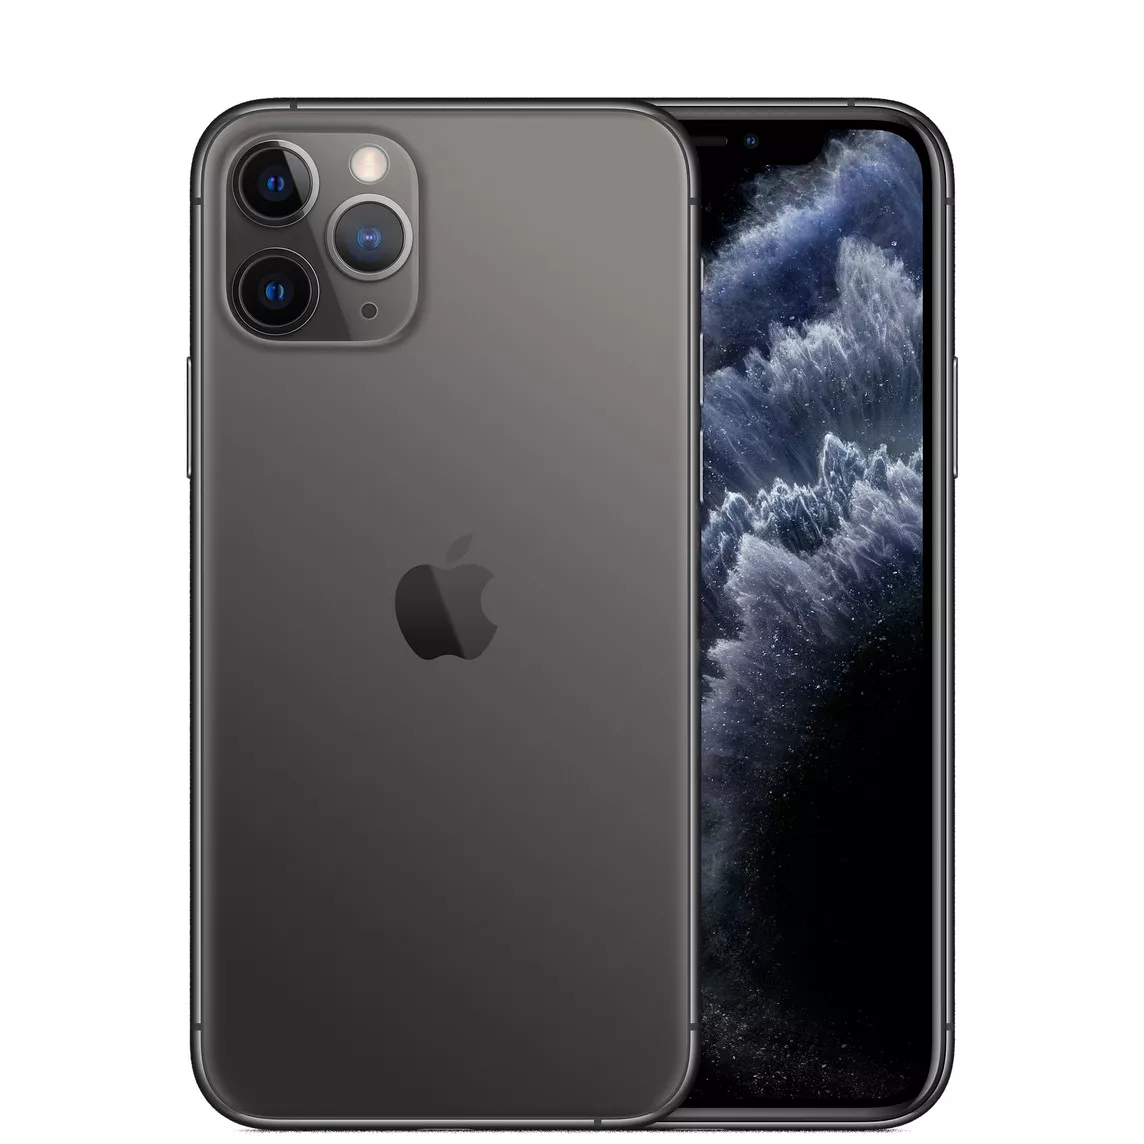 Apple iPhone 11 Pro (4GB/64GB) Space Grey Refurbished 0